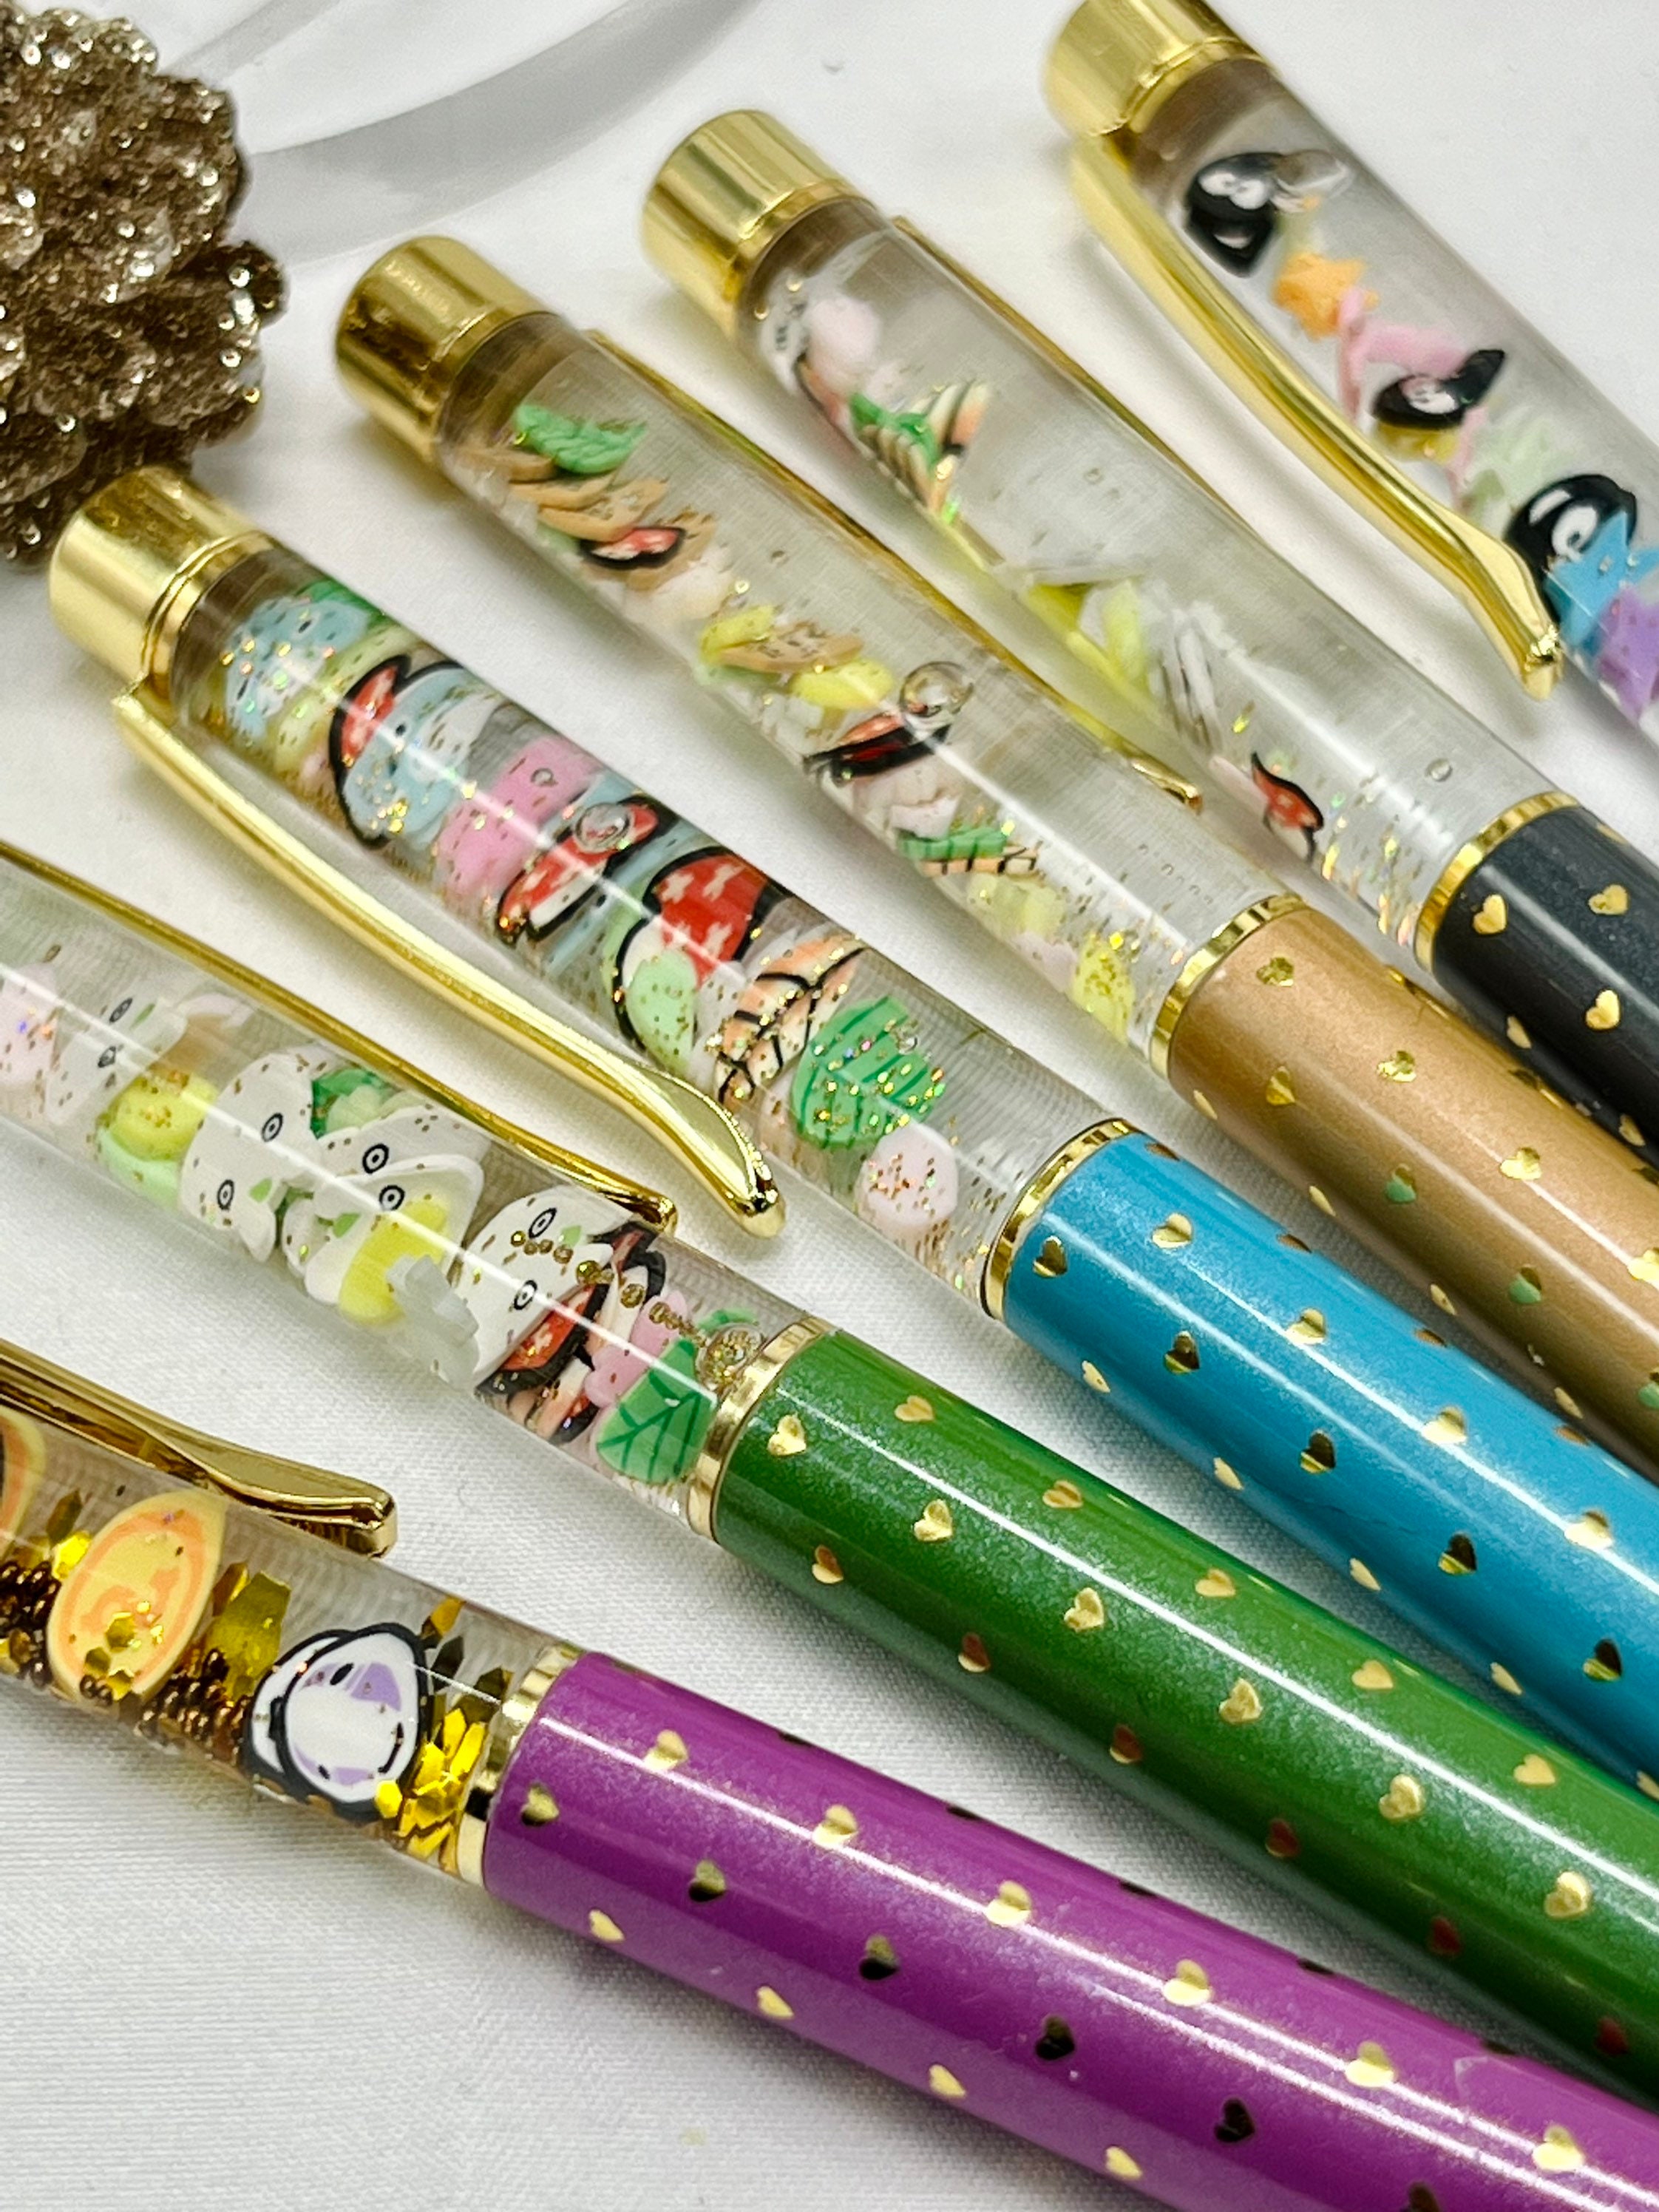 MOLANG MULTICOLOR PEN Kawaii Cute Rabbit Pen Cartoon Bunny Multi Color Pen  Anime Pen Retro Pen Planner Journal Pens 